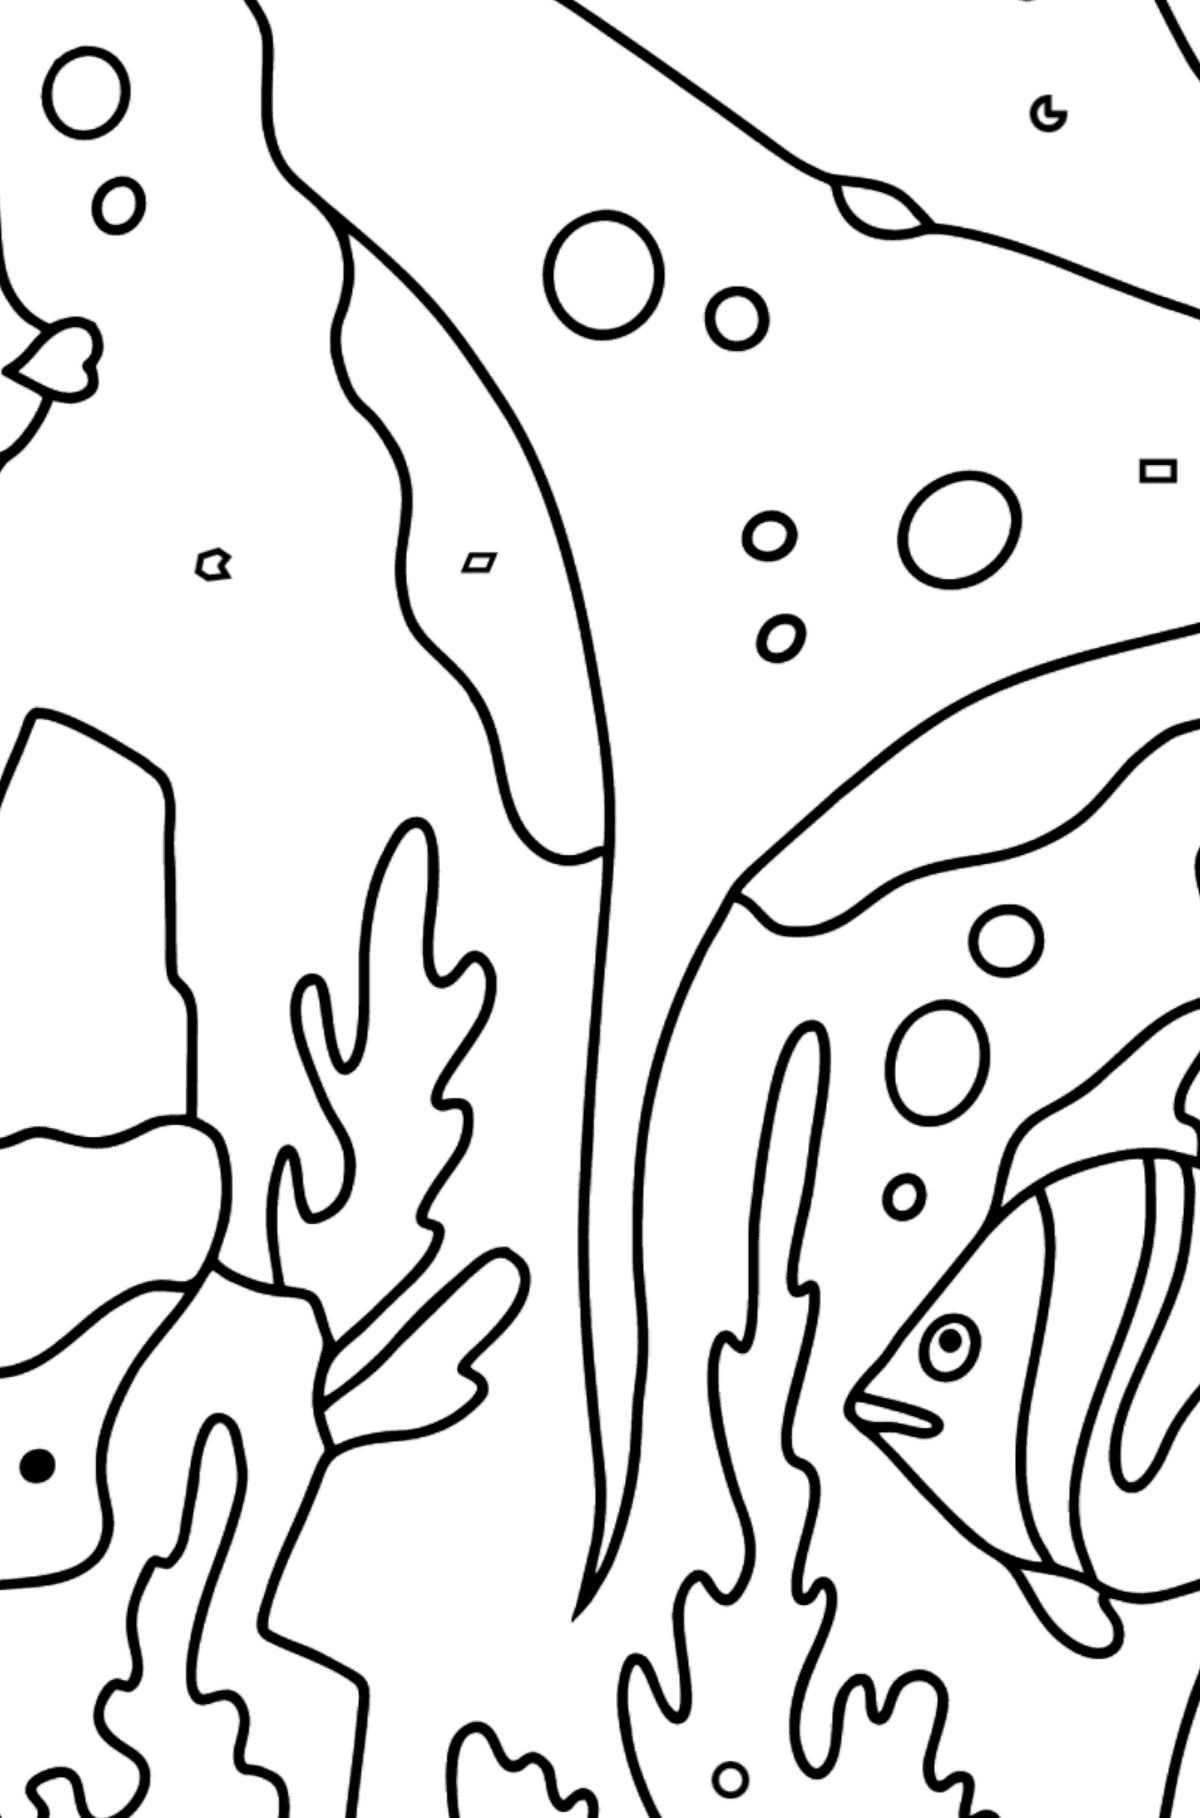 Värityskuva kala ja rausku (helppo) - Väritys Geometristen Kuvioden mukaan lapsille